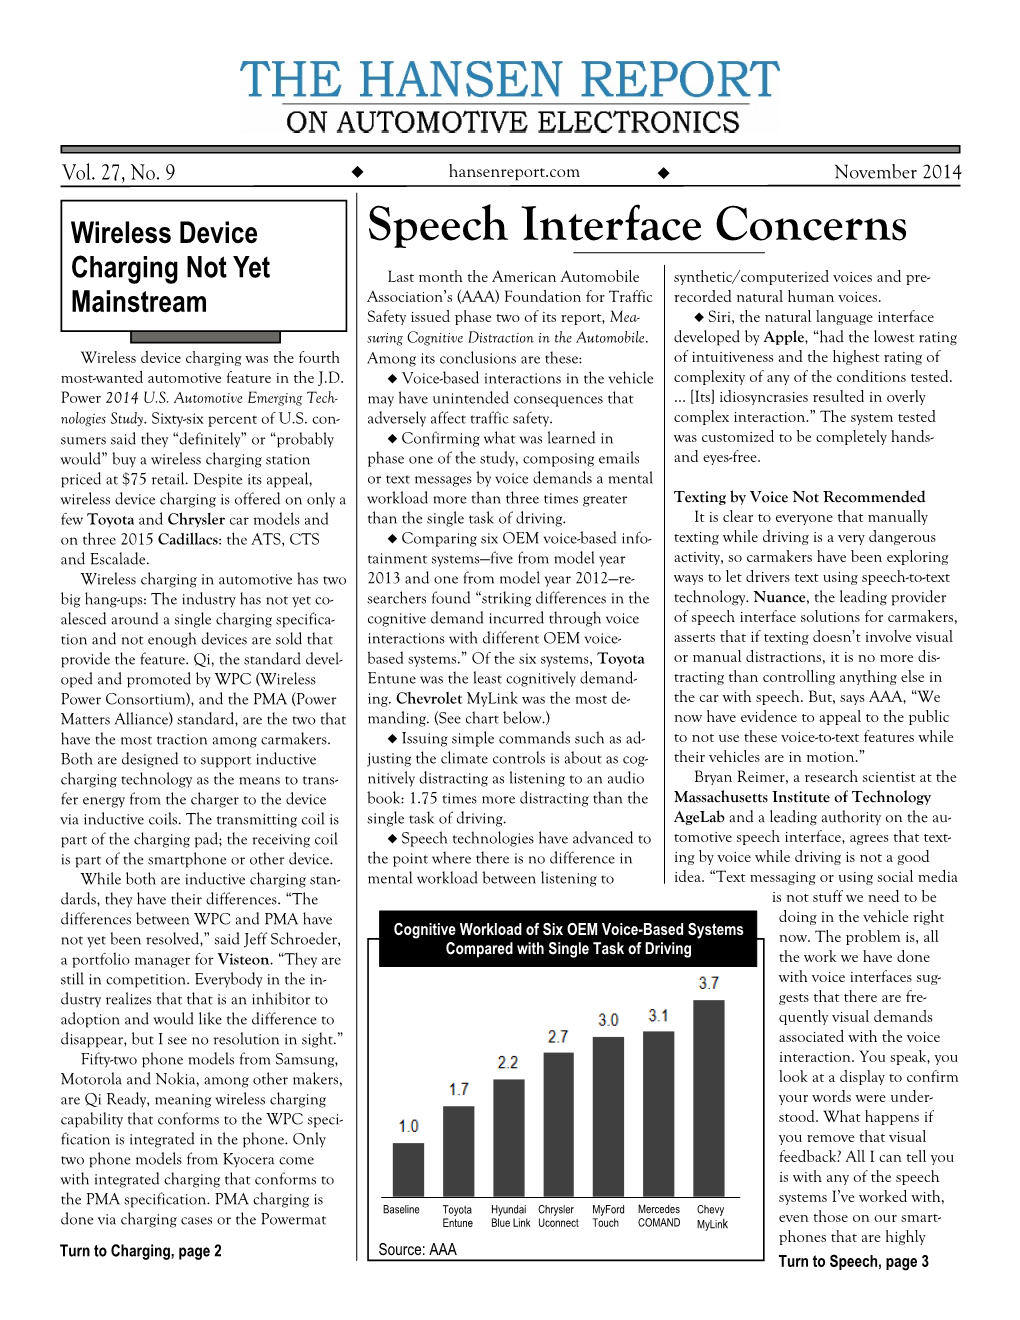 Speech Interface Concerns